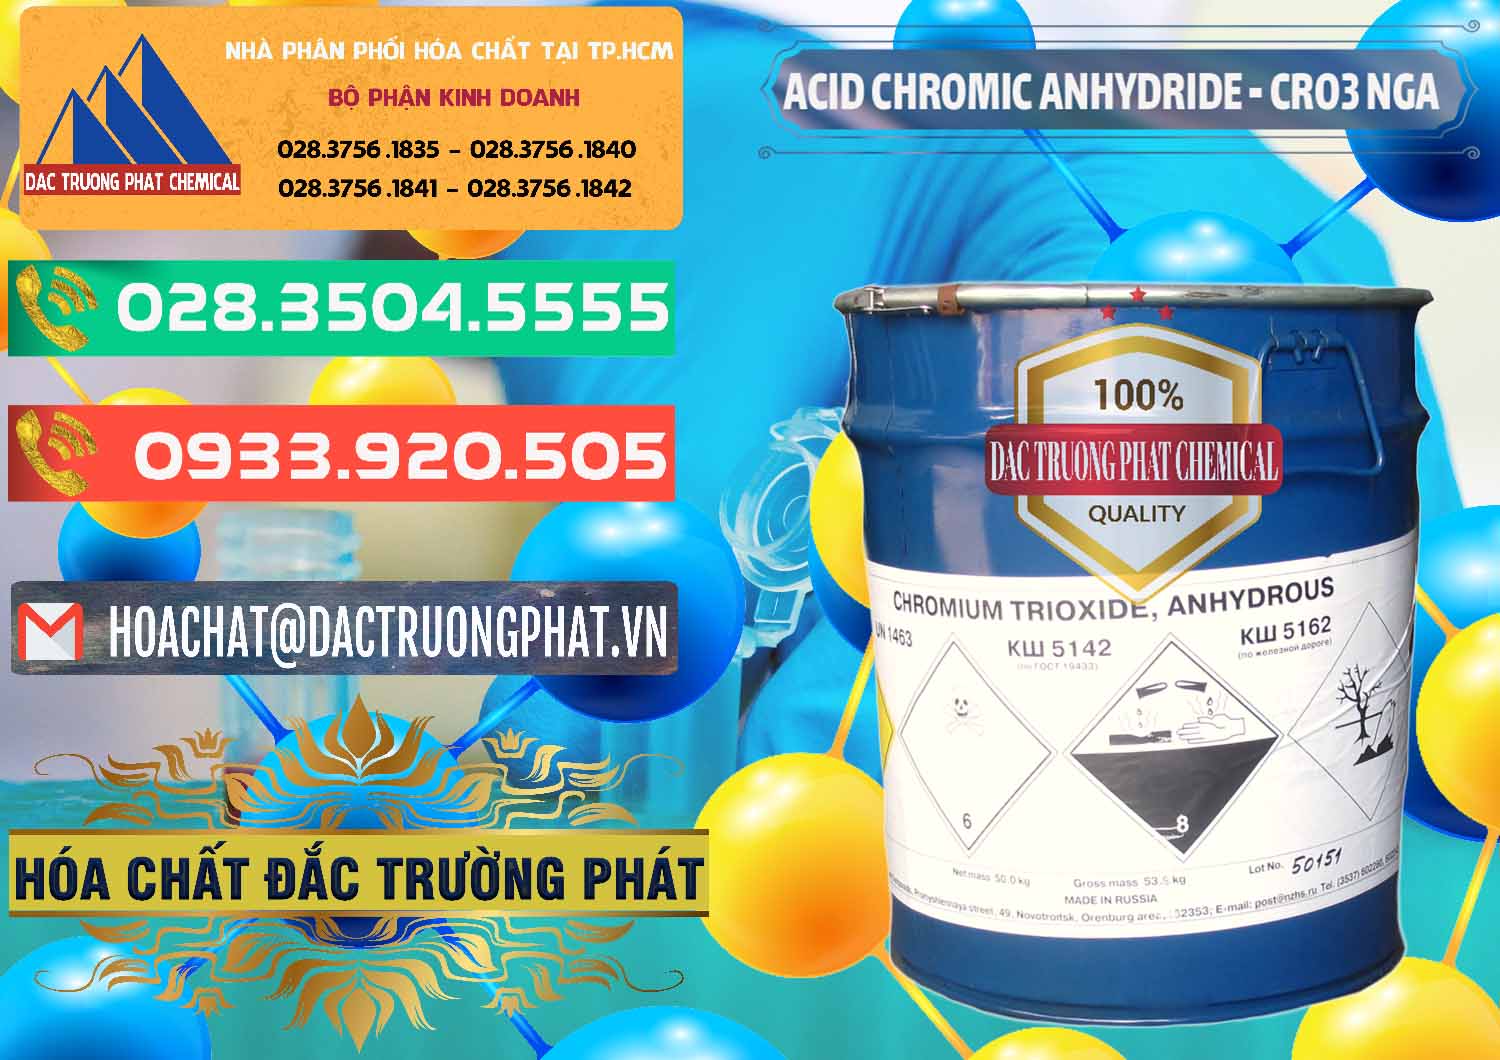 Đơn vị bán & cung ứng Acid Chromic Anhydride - Cromic CRO3 Nga Russia - 0006 - Đơn vị nhập khẩu và cung cấp hóa chất tại TP.HCM - congtyhoachat.com.vn